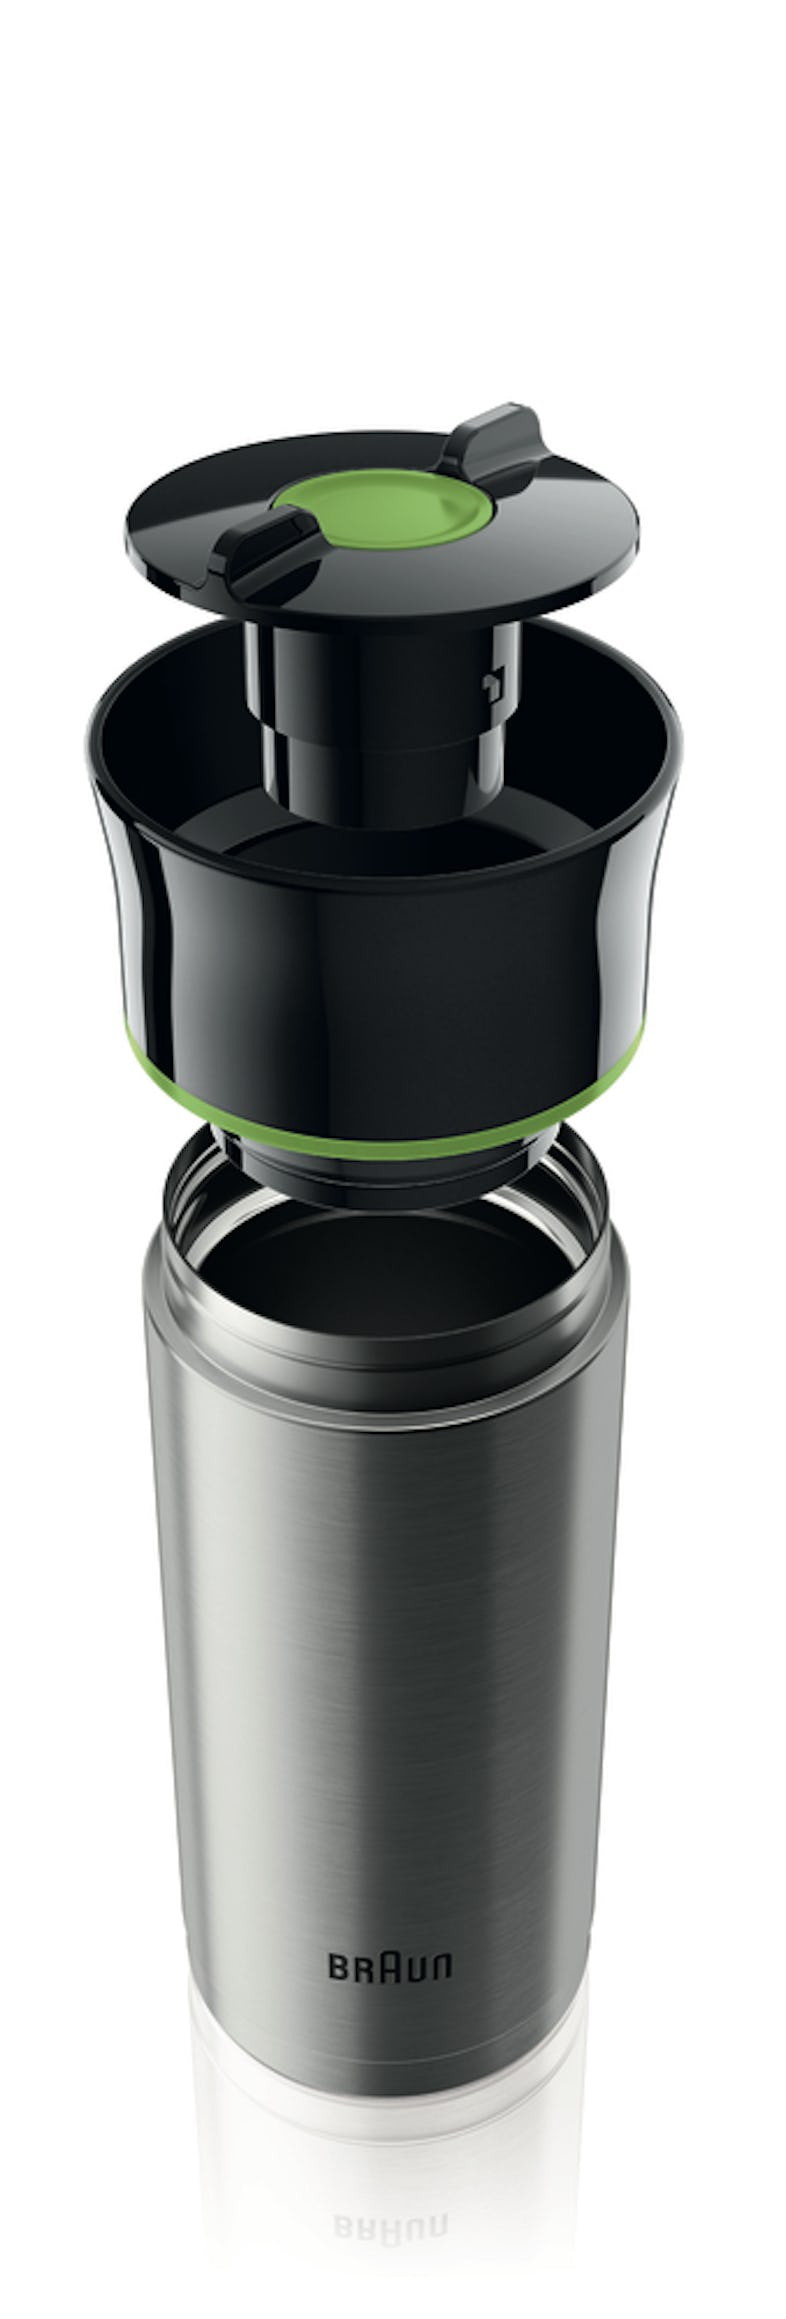 Braun Filterkaffeemaschine KF 7020, 12 Tassen-Aroma-Kanne | METRO Marktplatz | Kaffeemaschinen